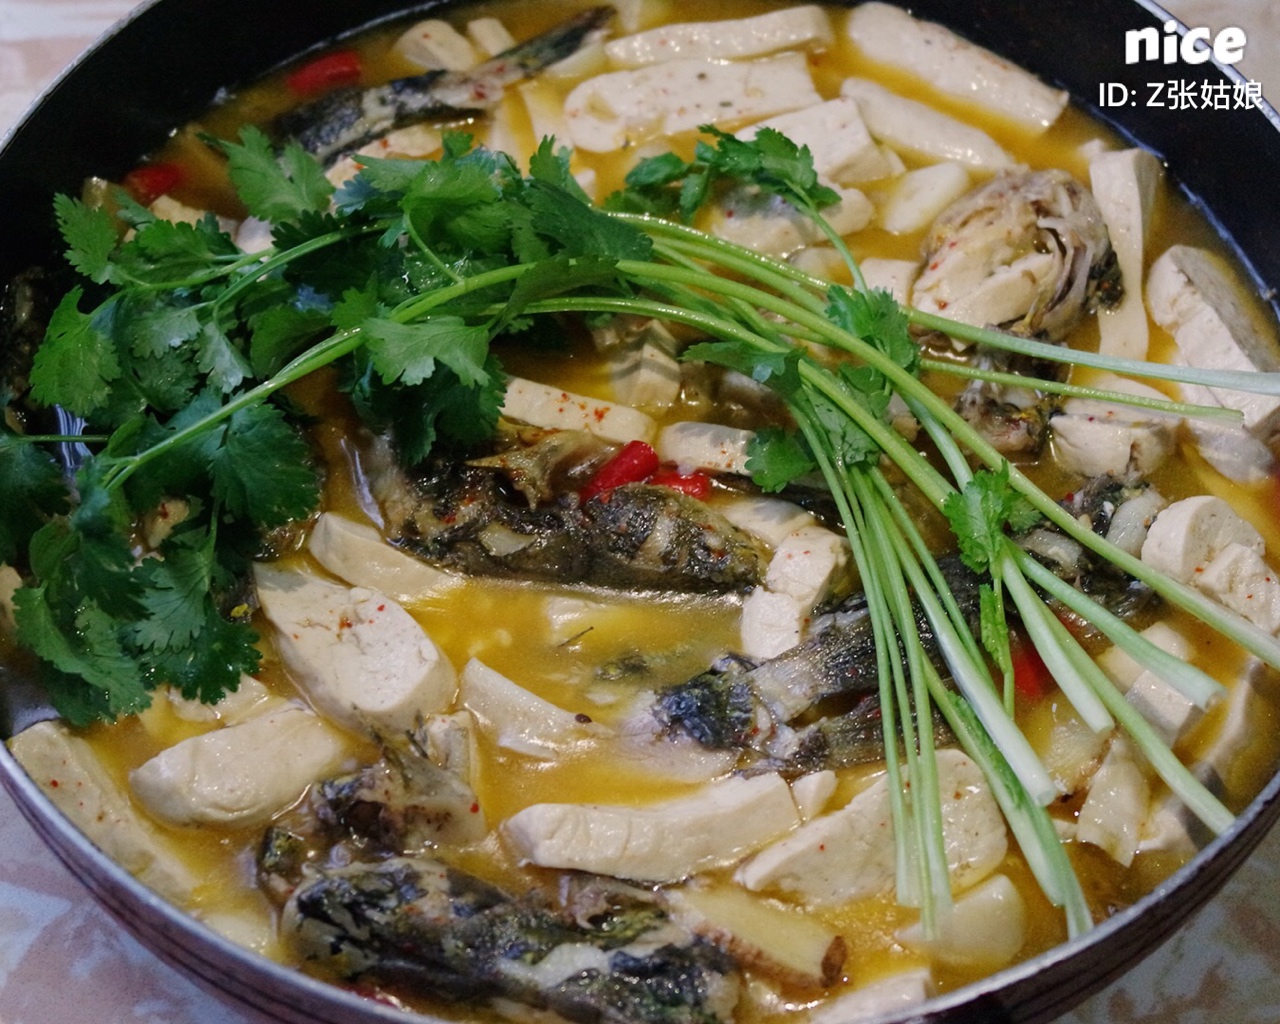 连锅一起上桌的黄骨鱼焖豆腐的做法